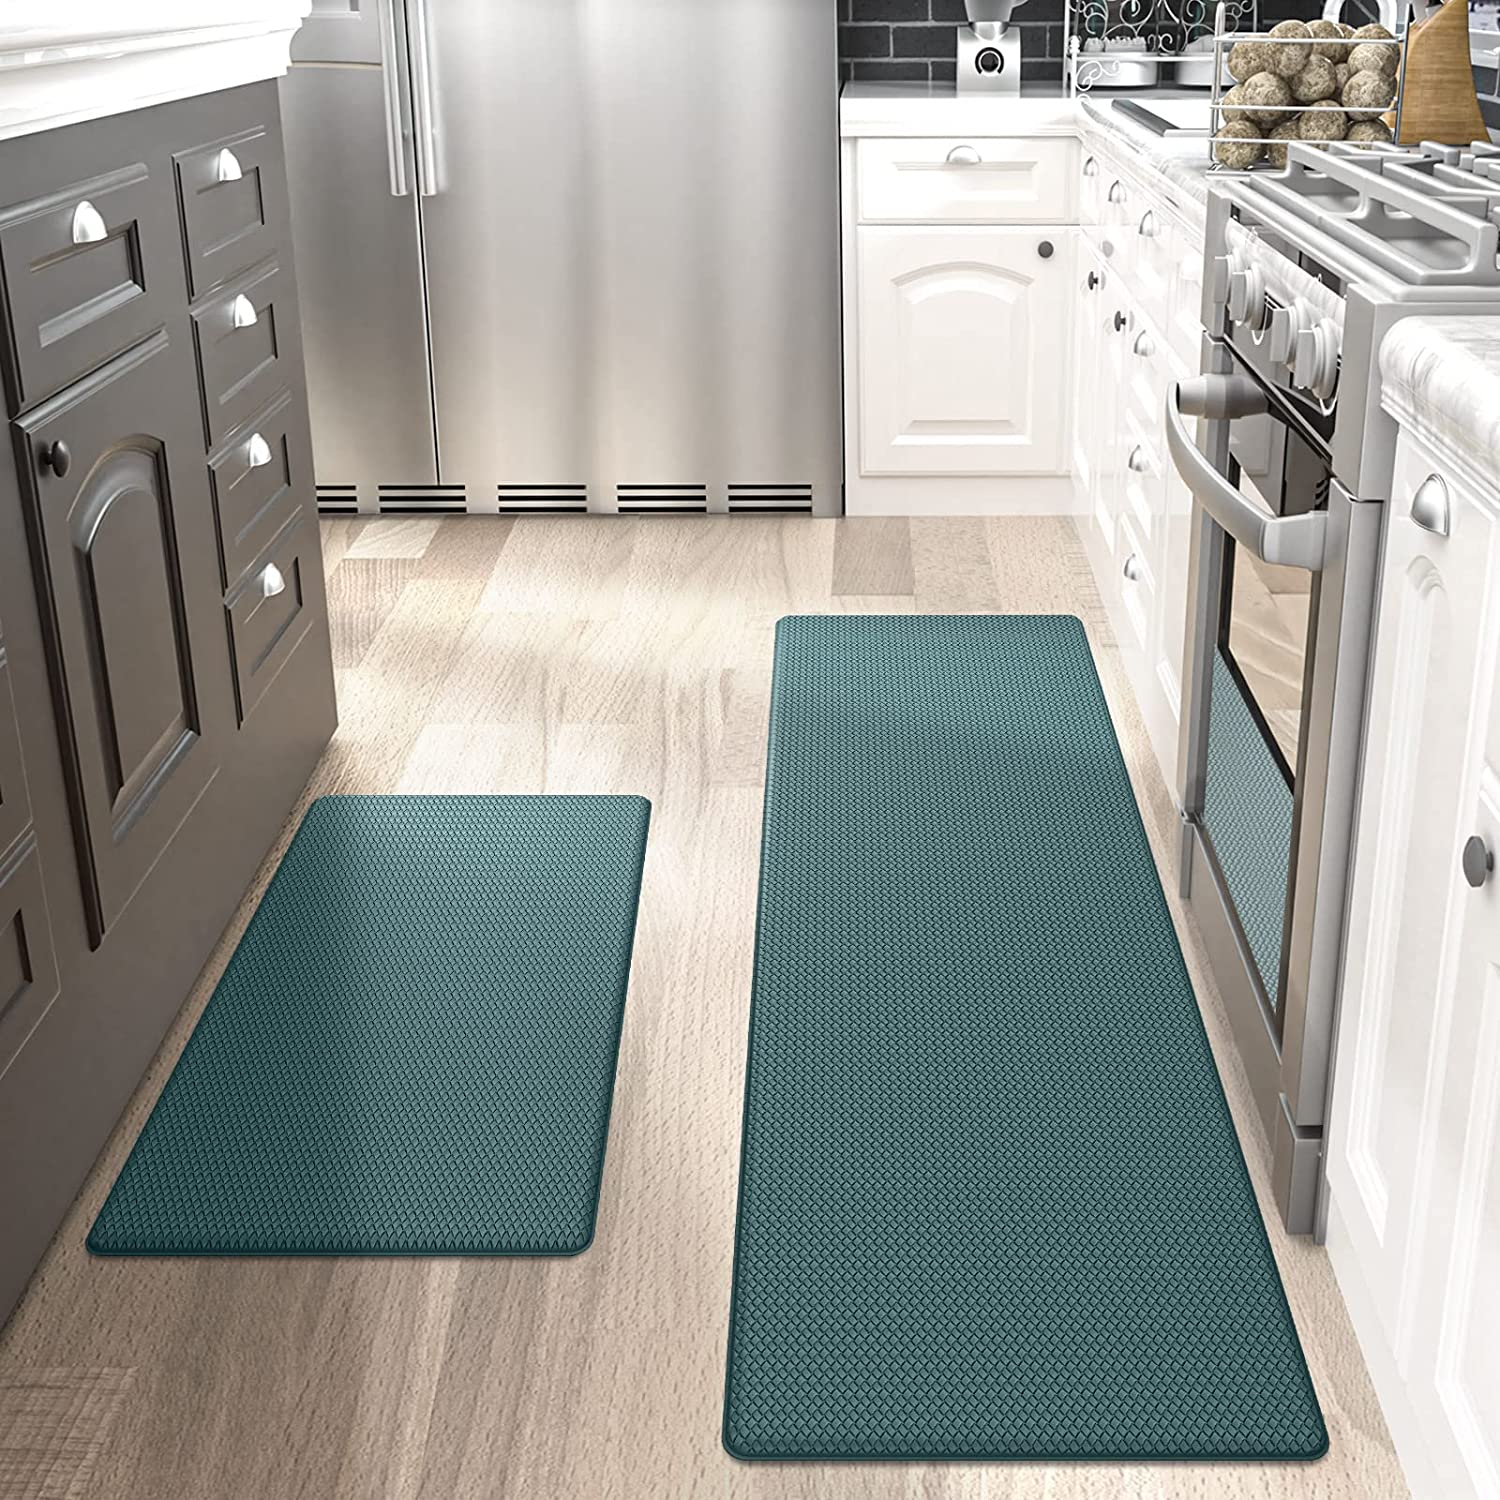 HappyTrends Kitchen Floor Mat Anti-Fatigue Kitchen Rug,Waterproof